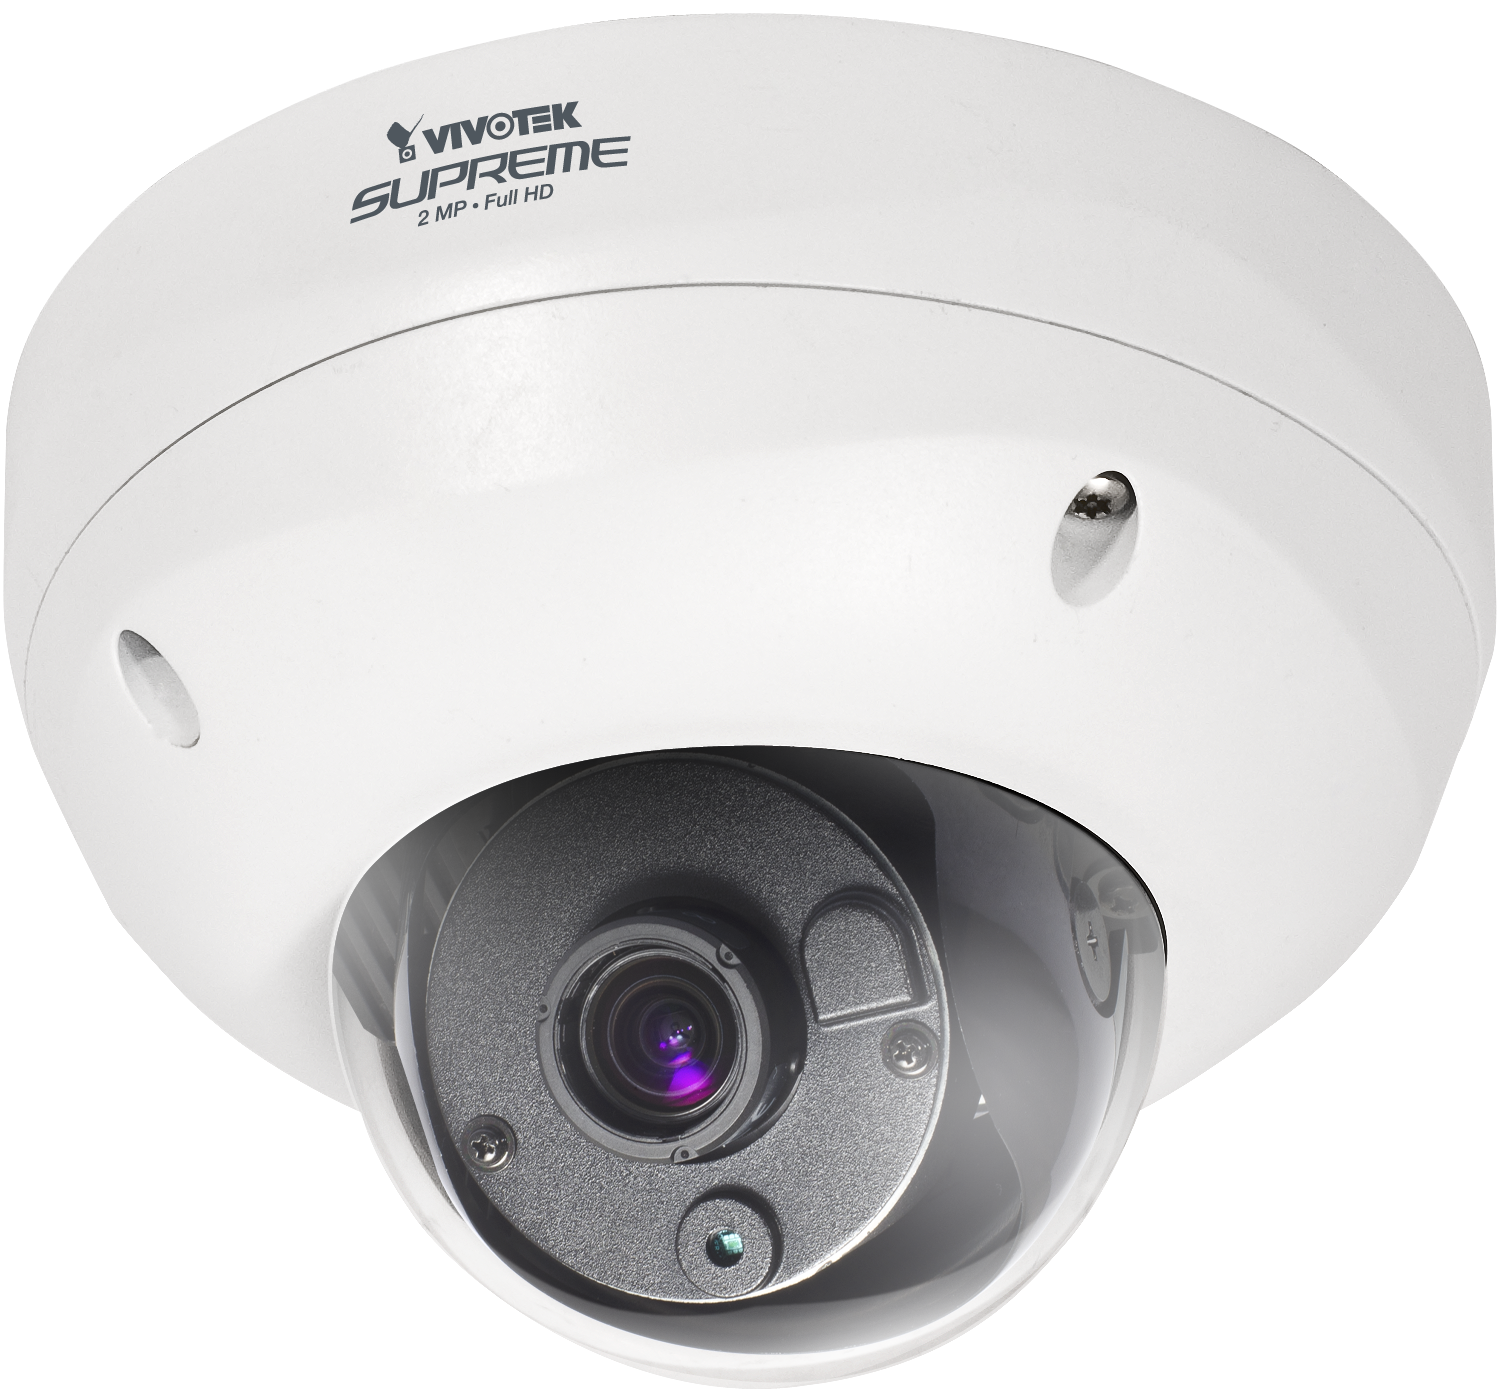 Drahtlose Sicherheitskamera CCTV-transparentes Bild